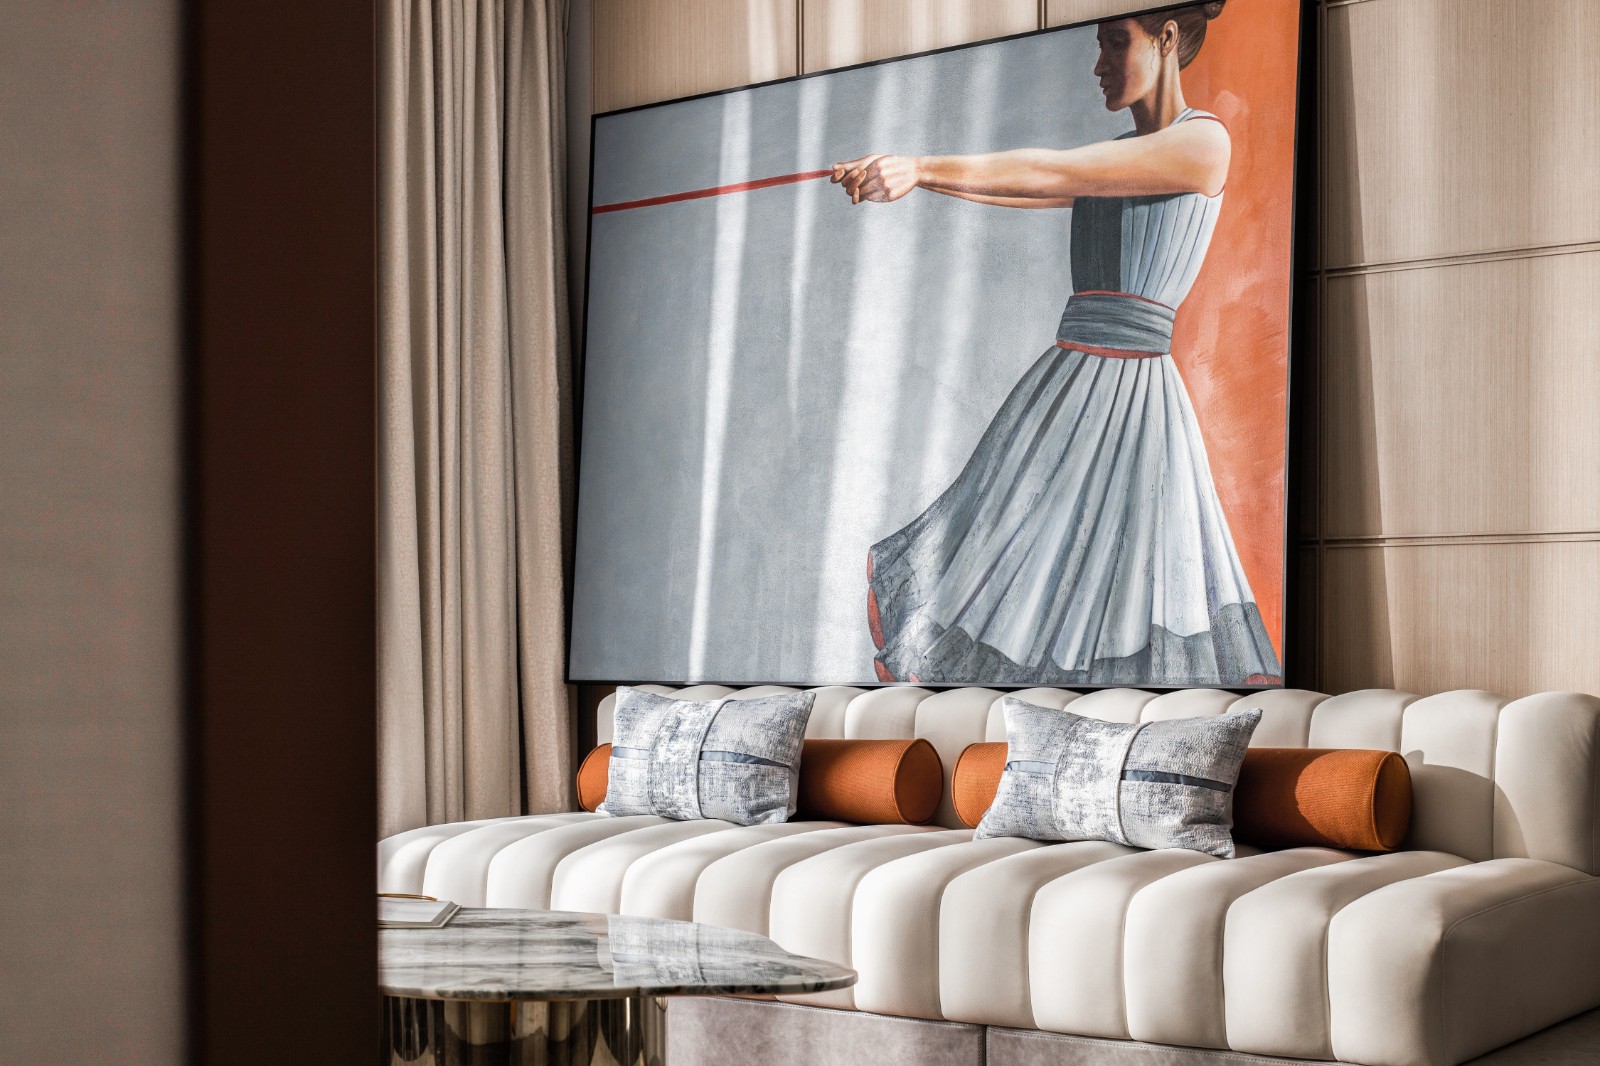 客厅空间整体灰色调，丝绒质感沙发体现精致氛围，背景墙加入艺术画设计，带来一个现代优雅的大气空间感。